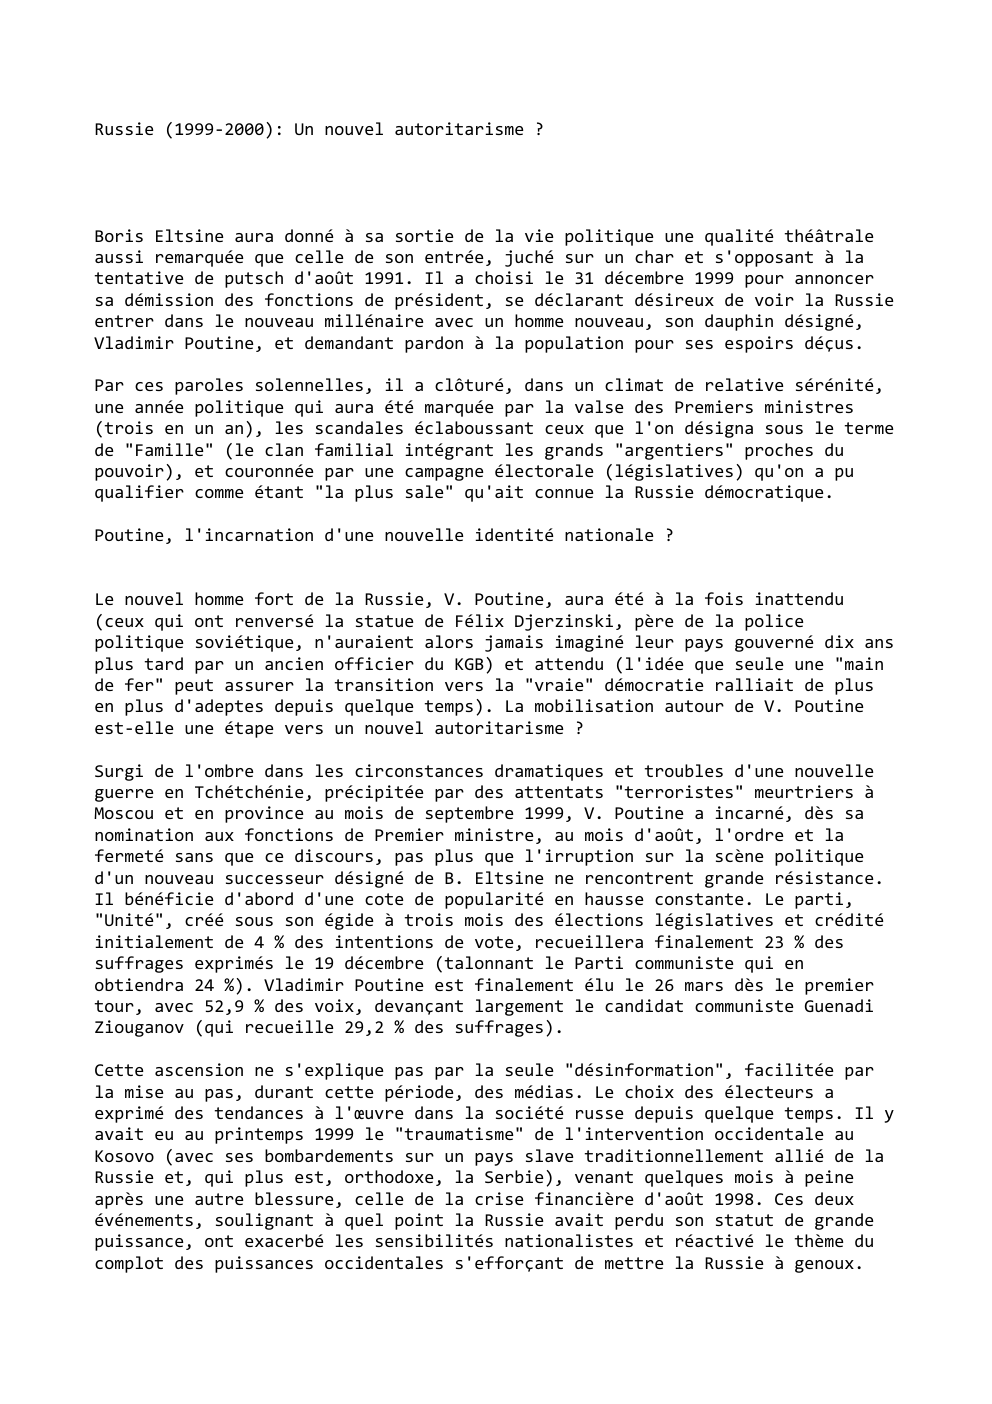 Prévisualisation du document Russie (1999-2000): Un nouvel autoritarisme ?

Boris Eltsine aura donné à sa sortie de la vie politique une qualité théâtrale...